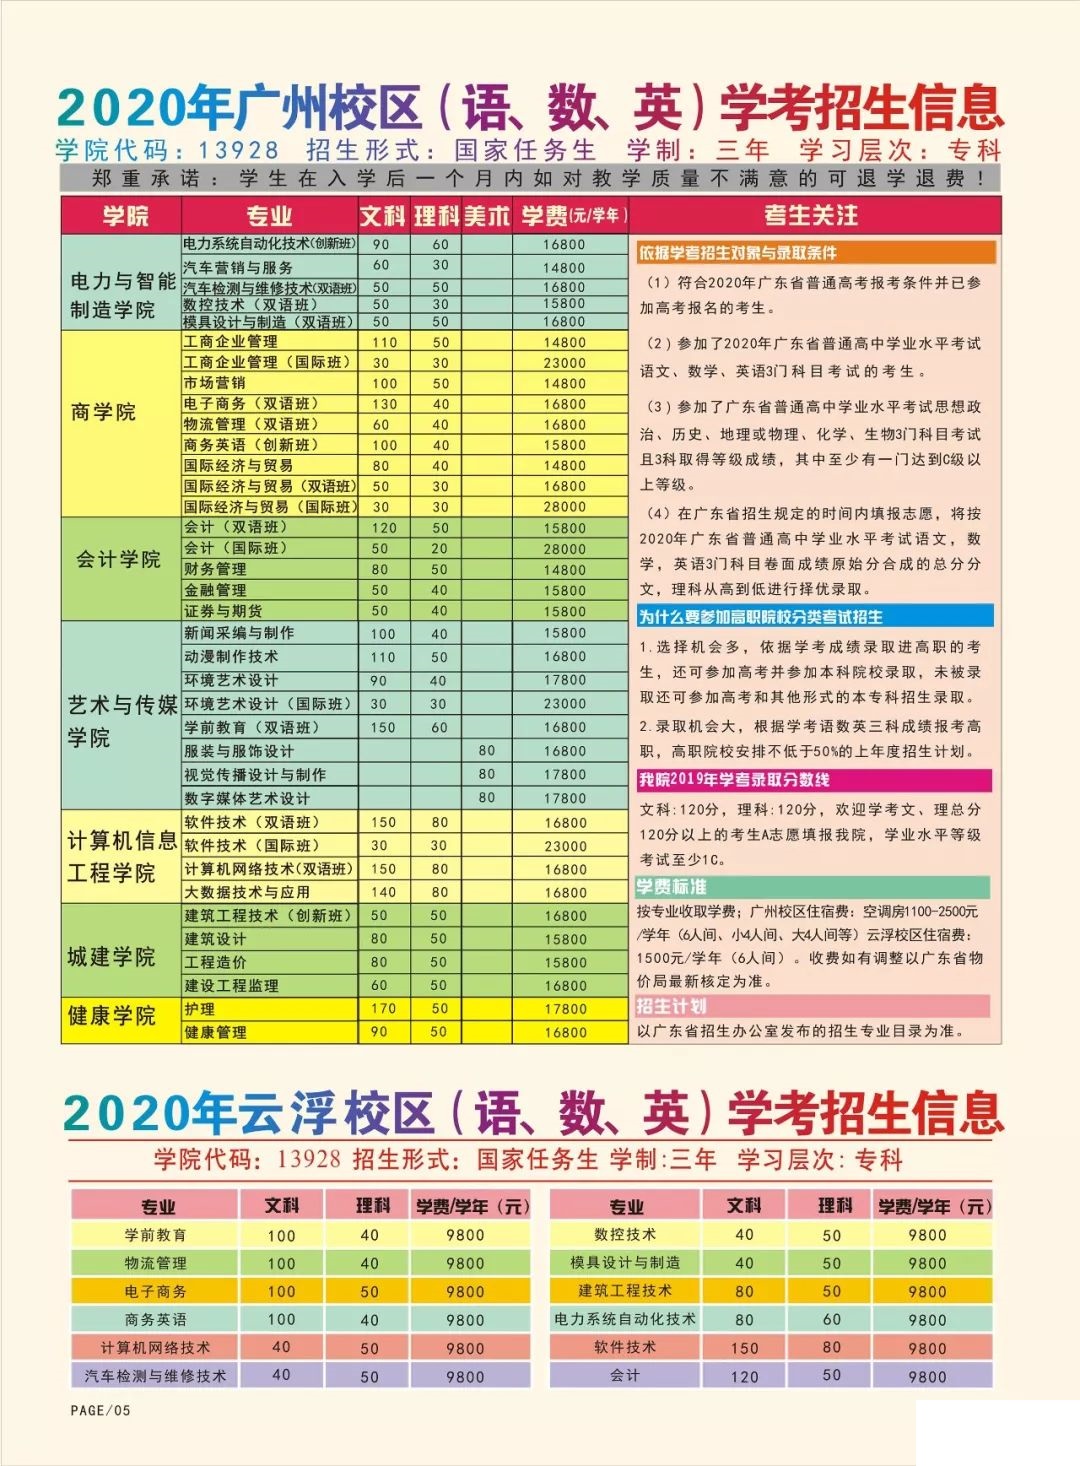 广州华立科技职业学院2020春季招生计划